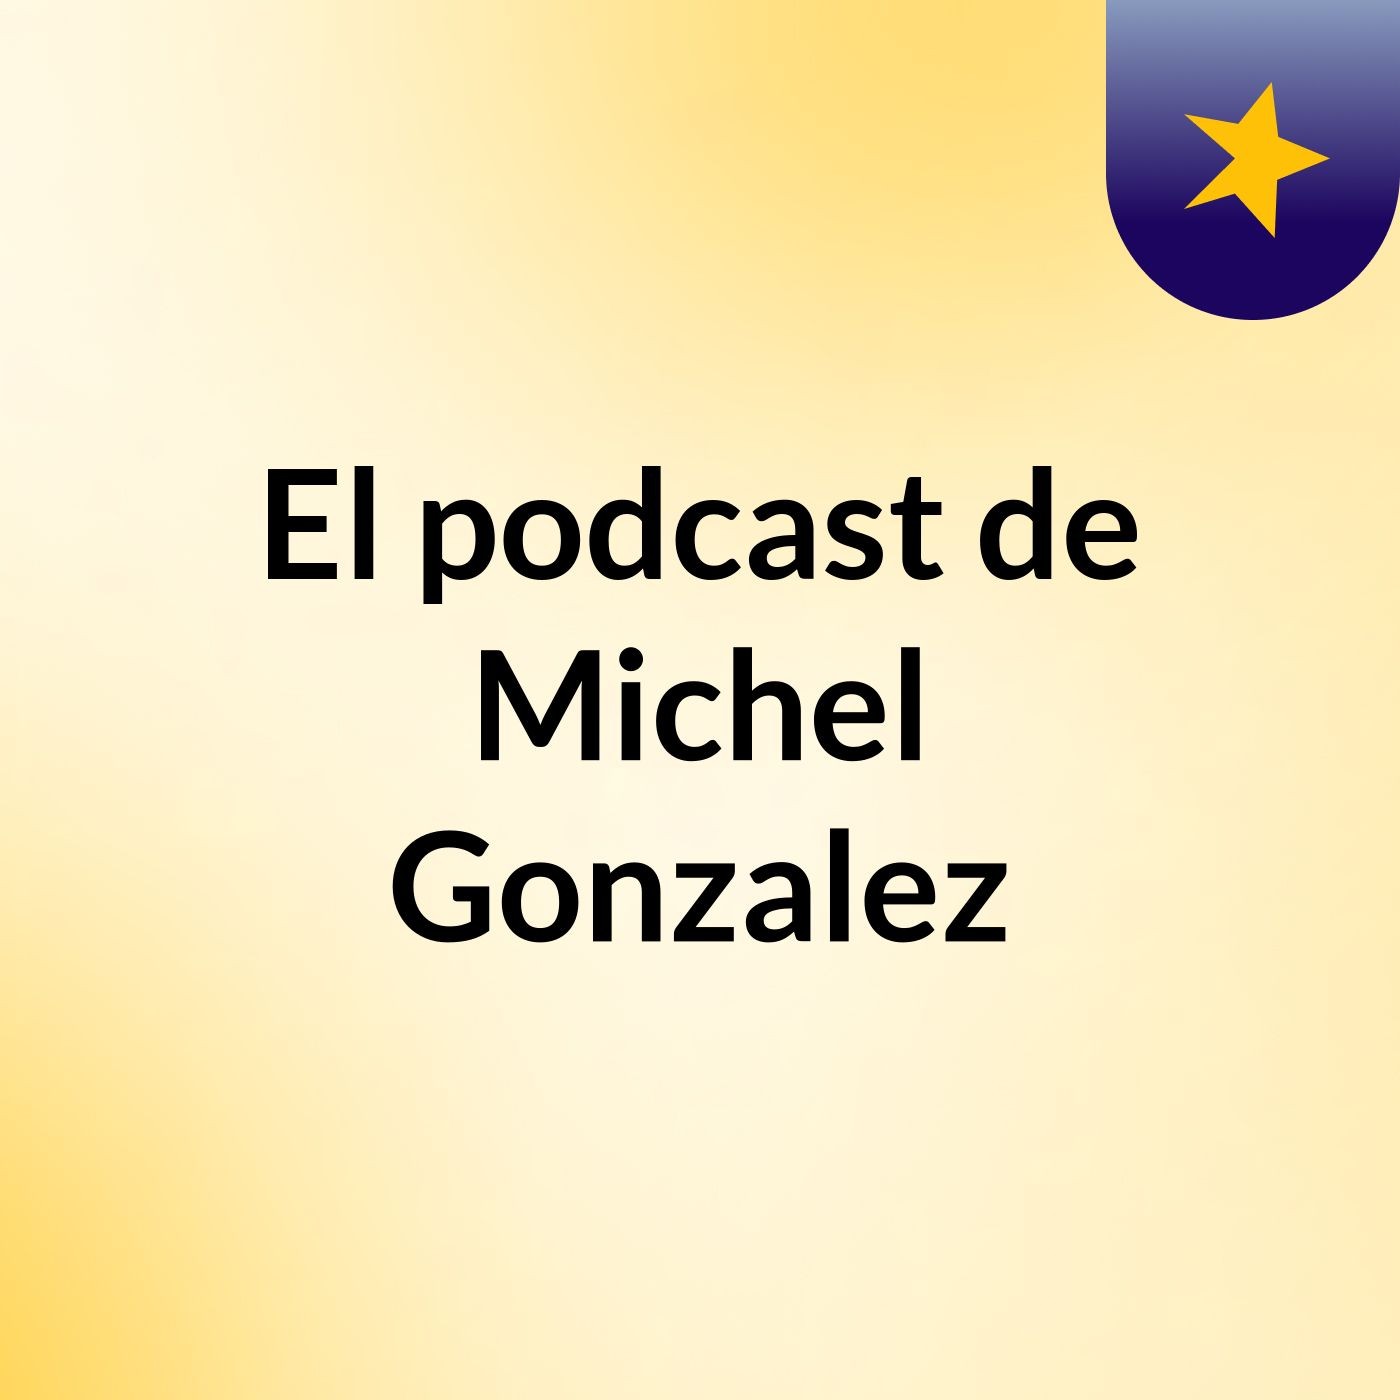 El podcast de Michel Gonzalez